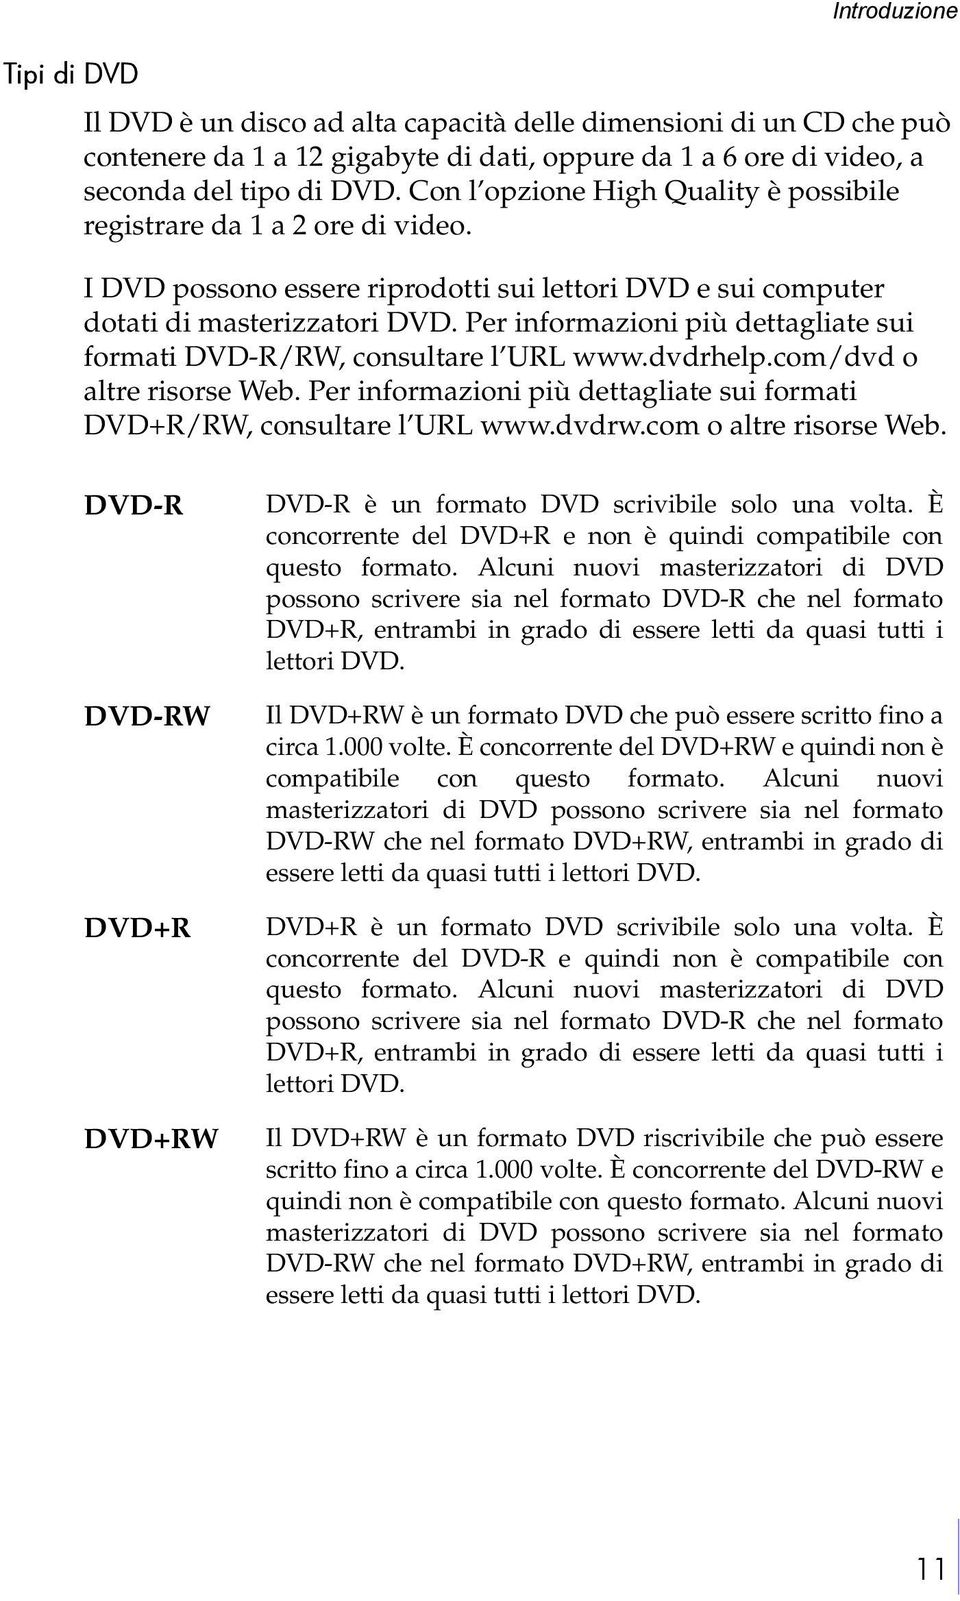 Per informazioni più dettagliate sui formati DVD-R/RW, consultare l URL www.dvdrhelp.com/dvd o altre risorse Web. Per informazioni più dettagliate sui formati DVD+R/RW, consultare l URL www.dvdrw.